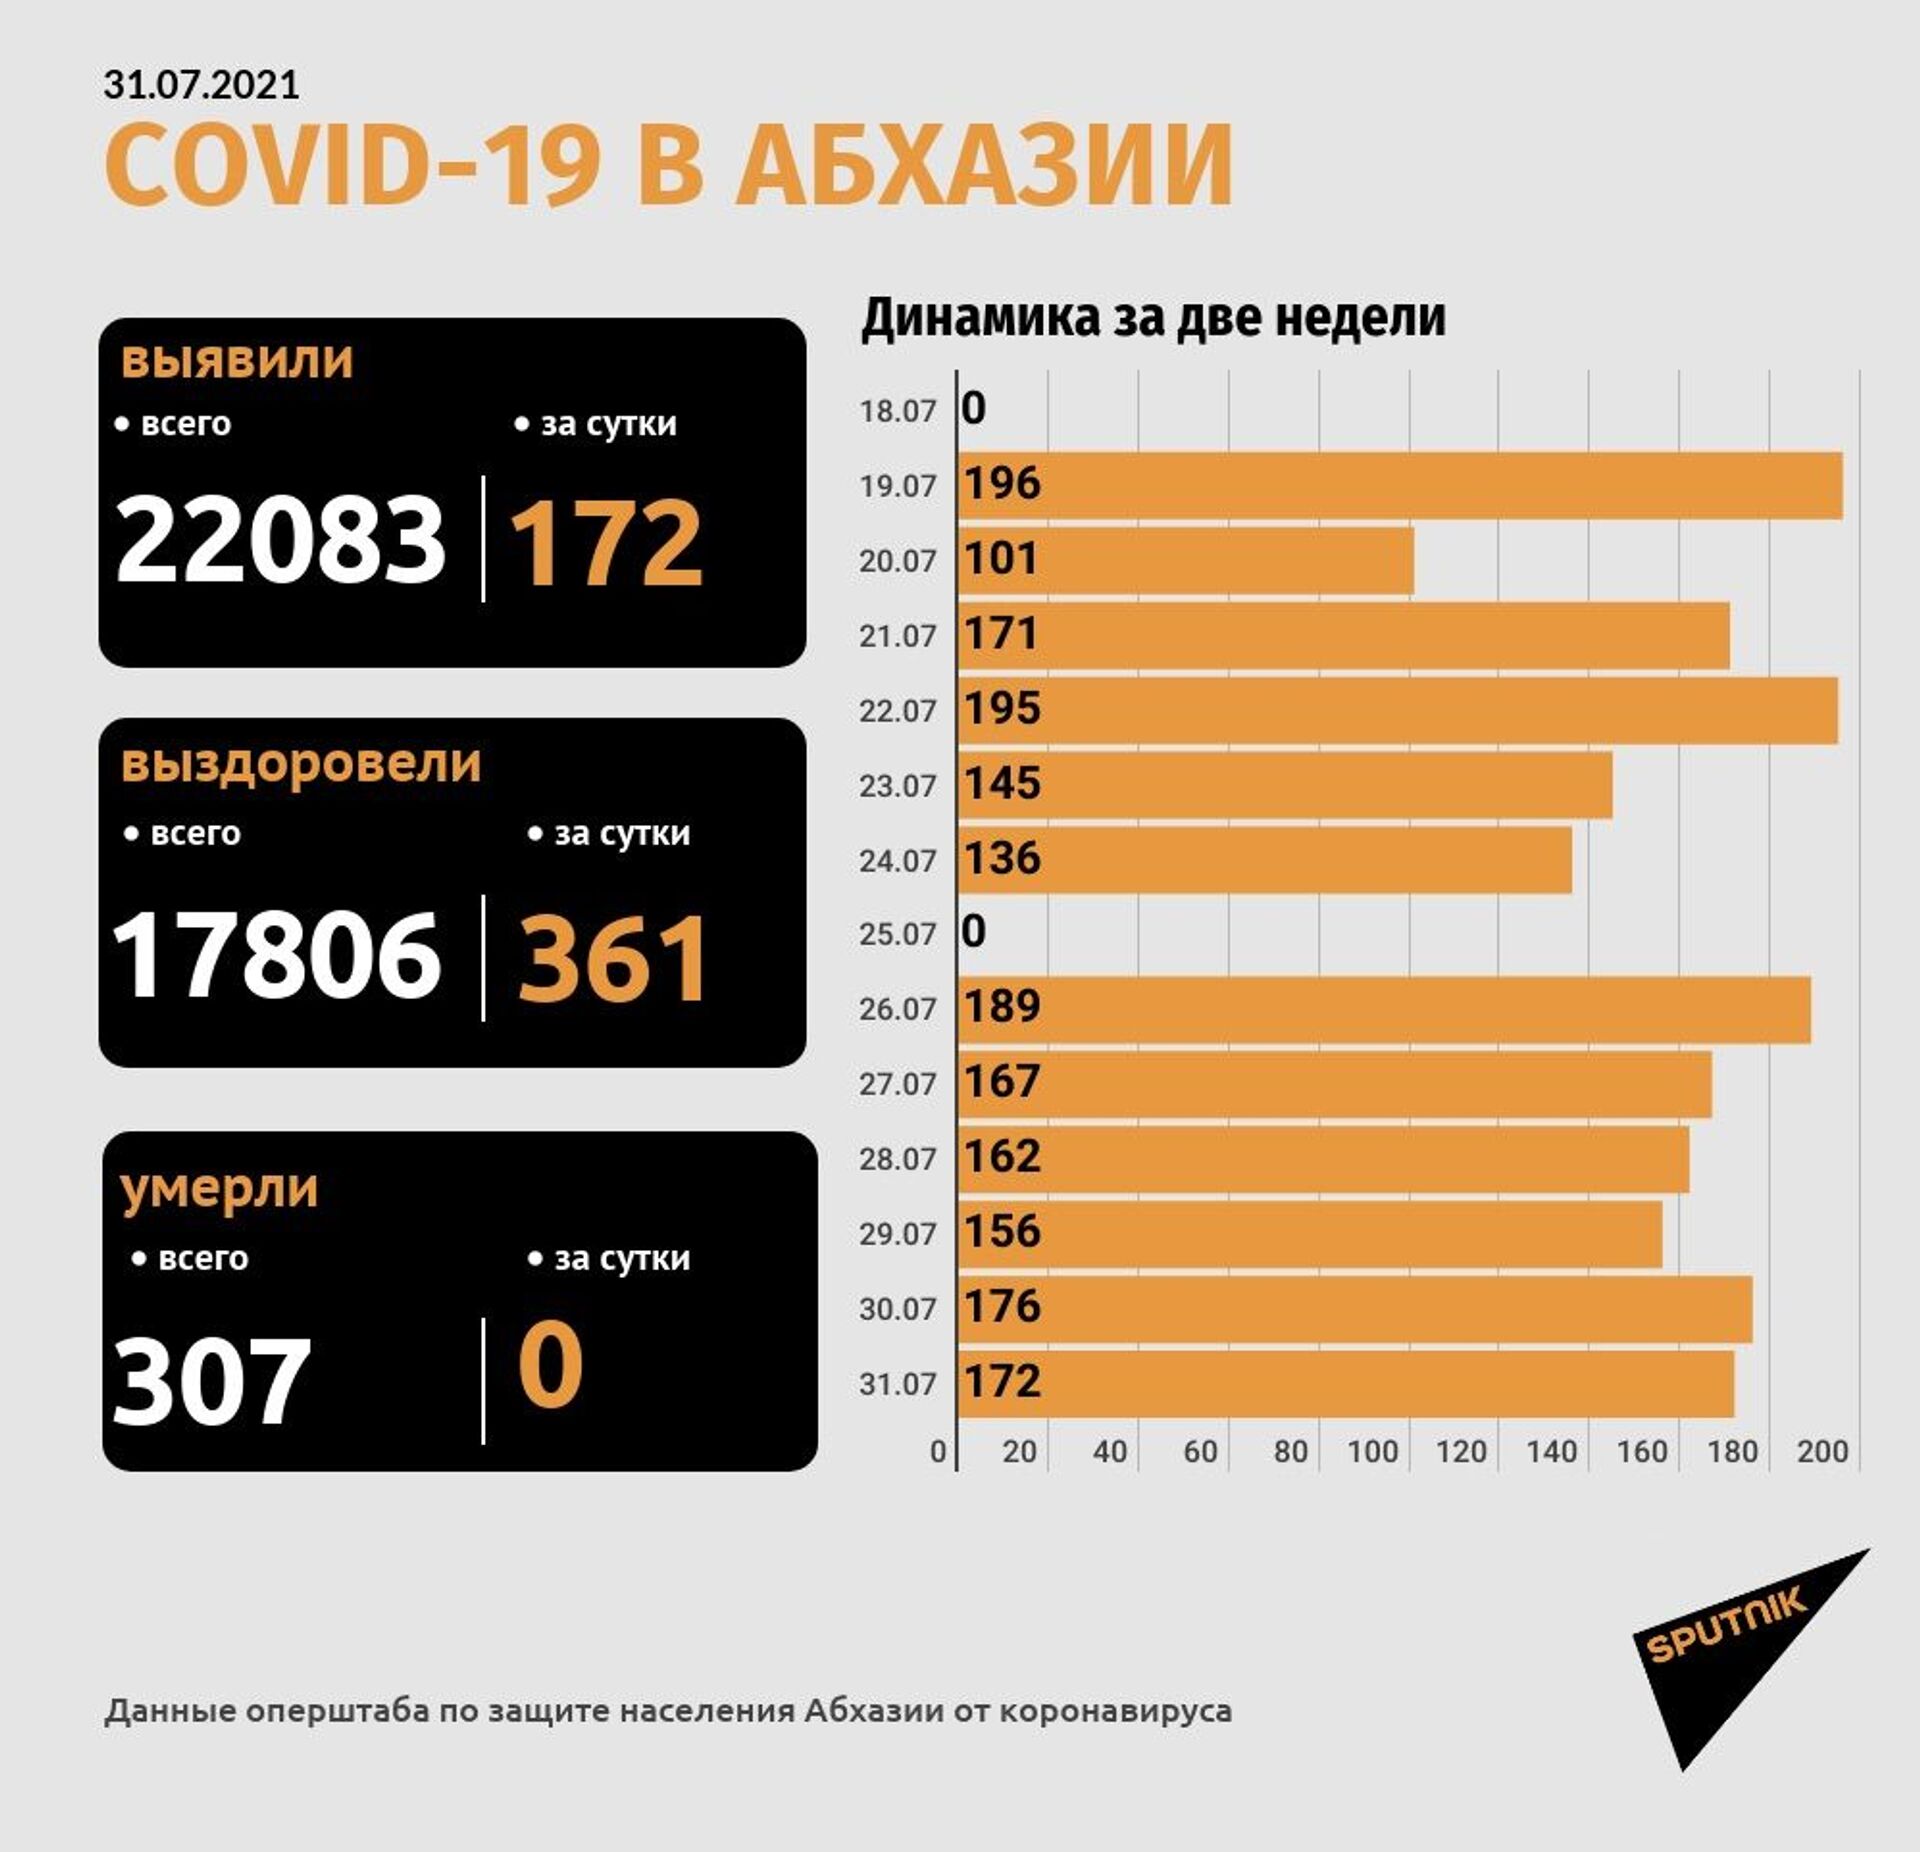 Общее число случаев COVID-19 в Абхазии превысило 22 тысячи - Sputnik Абхазия, 1920, 31.07.2021